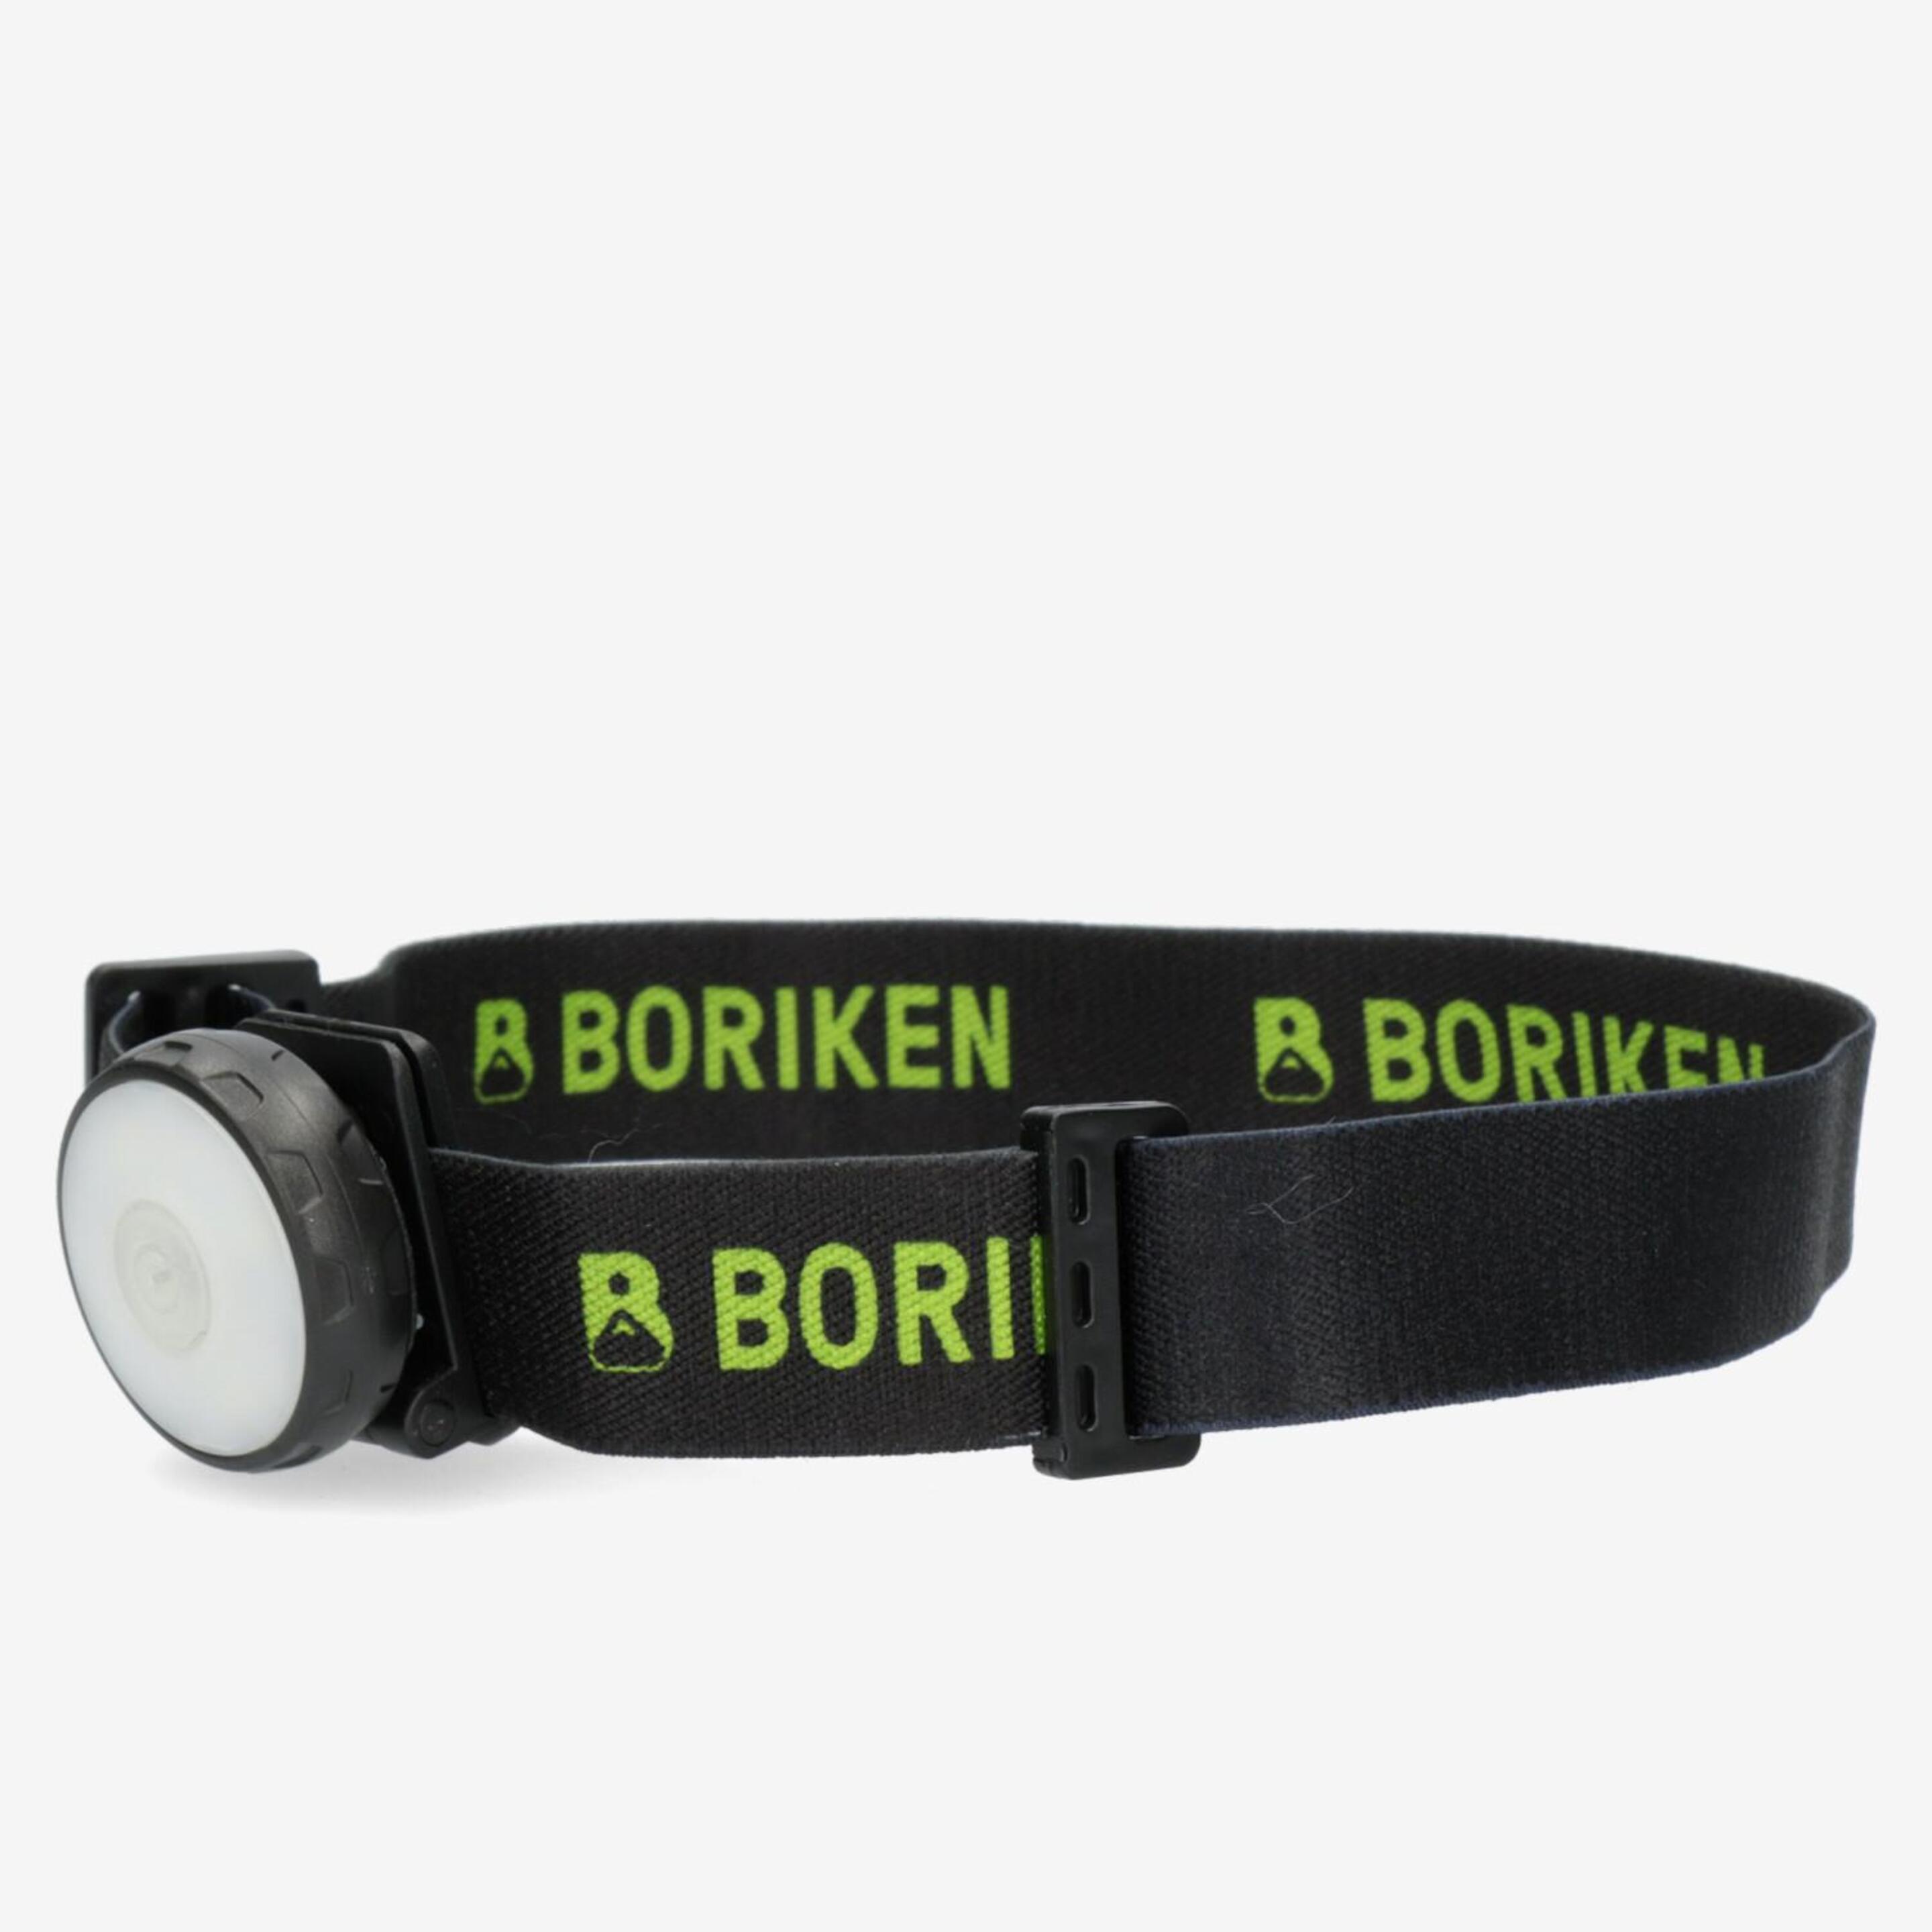 Luz Frontal Boriken - Negro - Accesorios Montaña